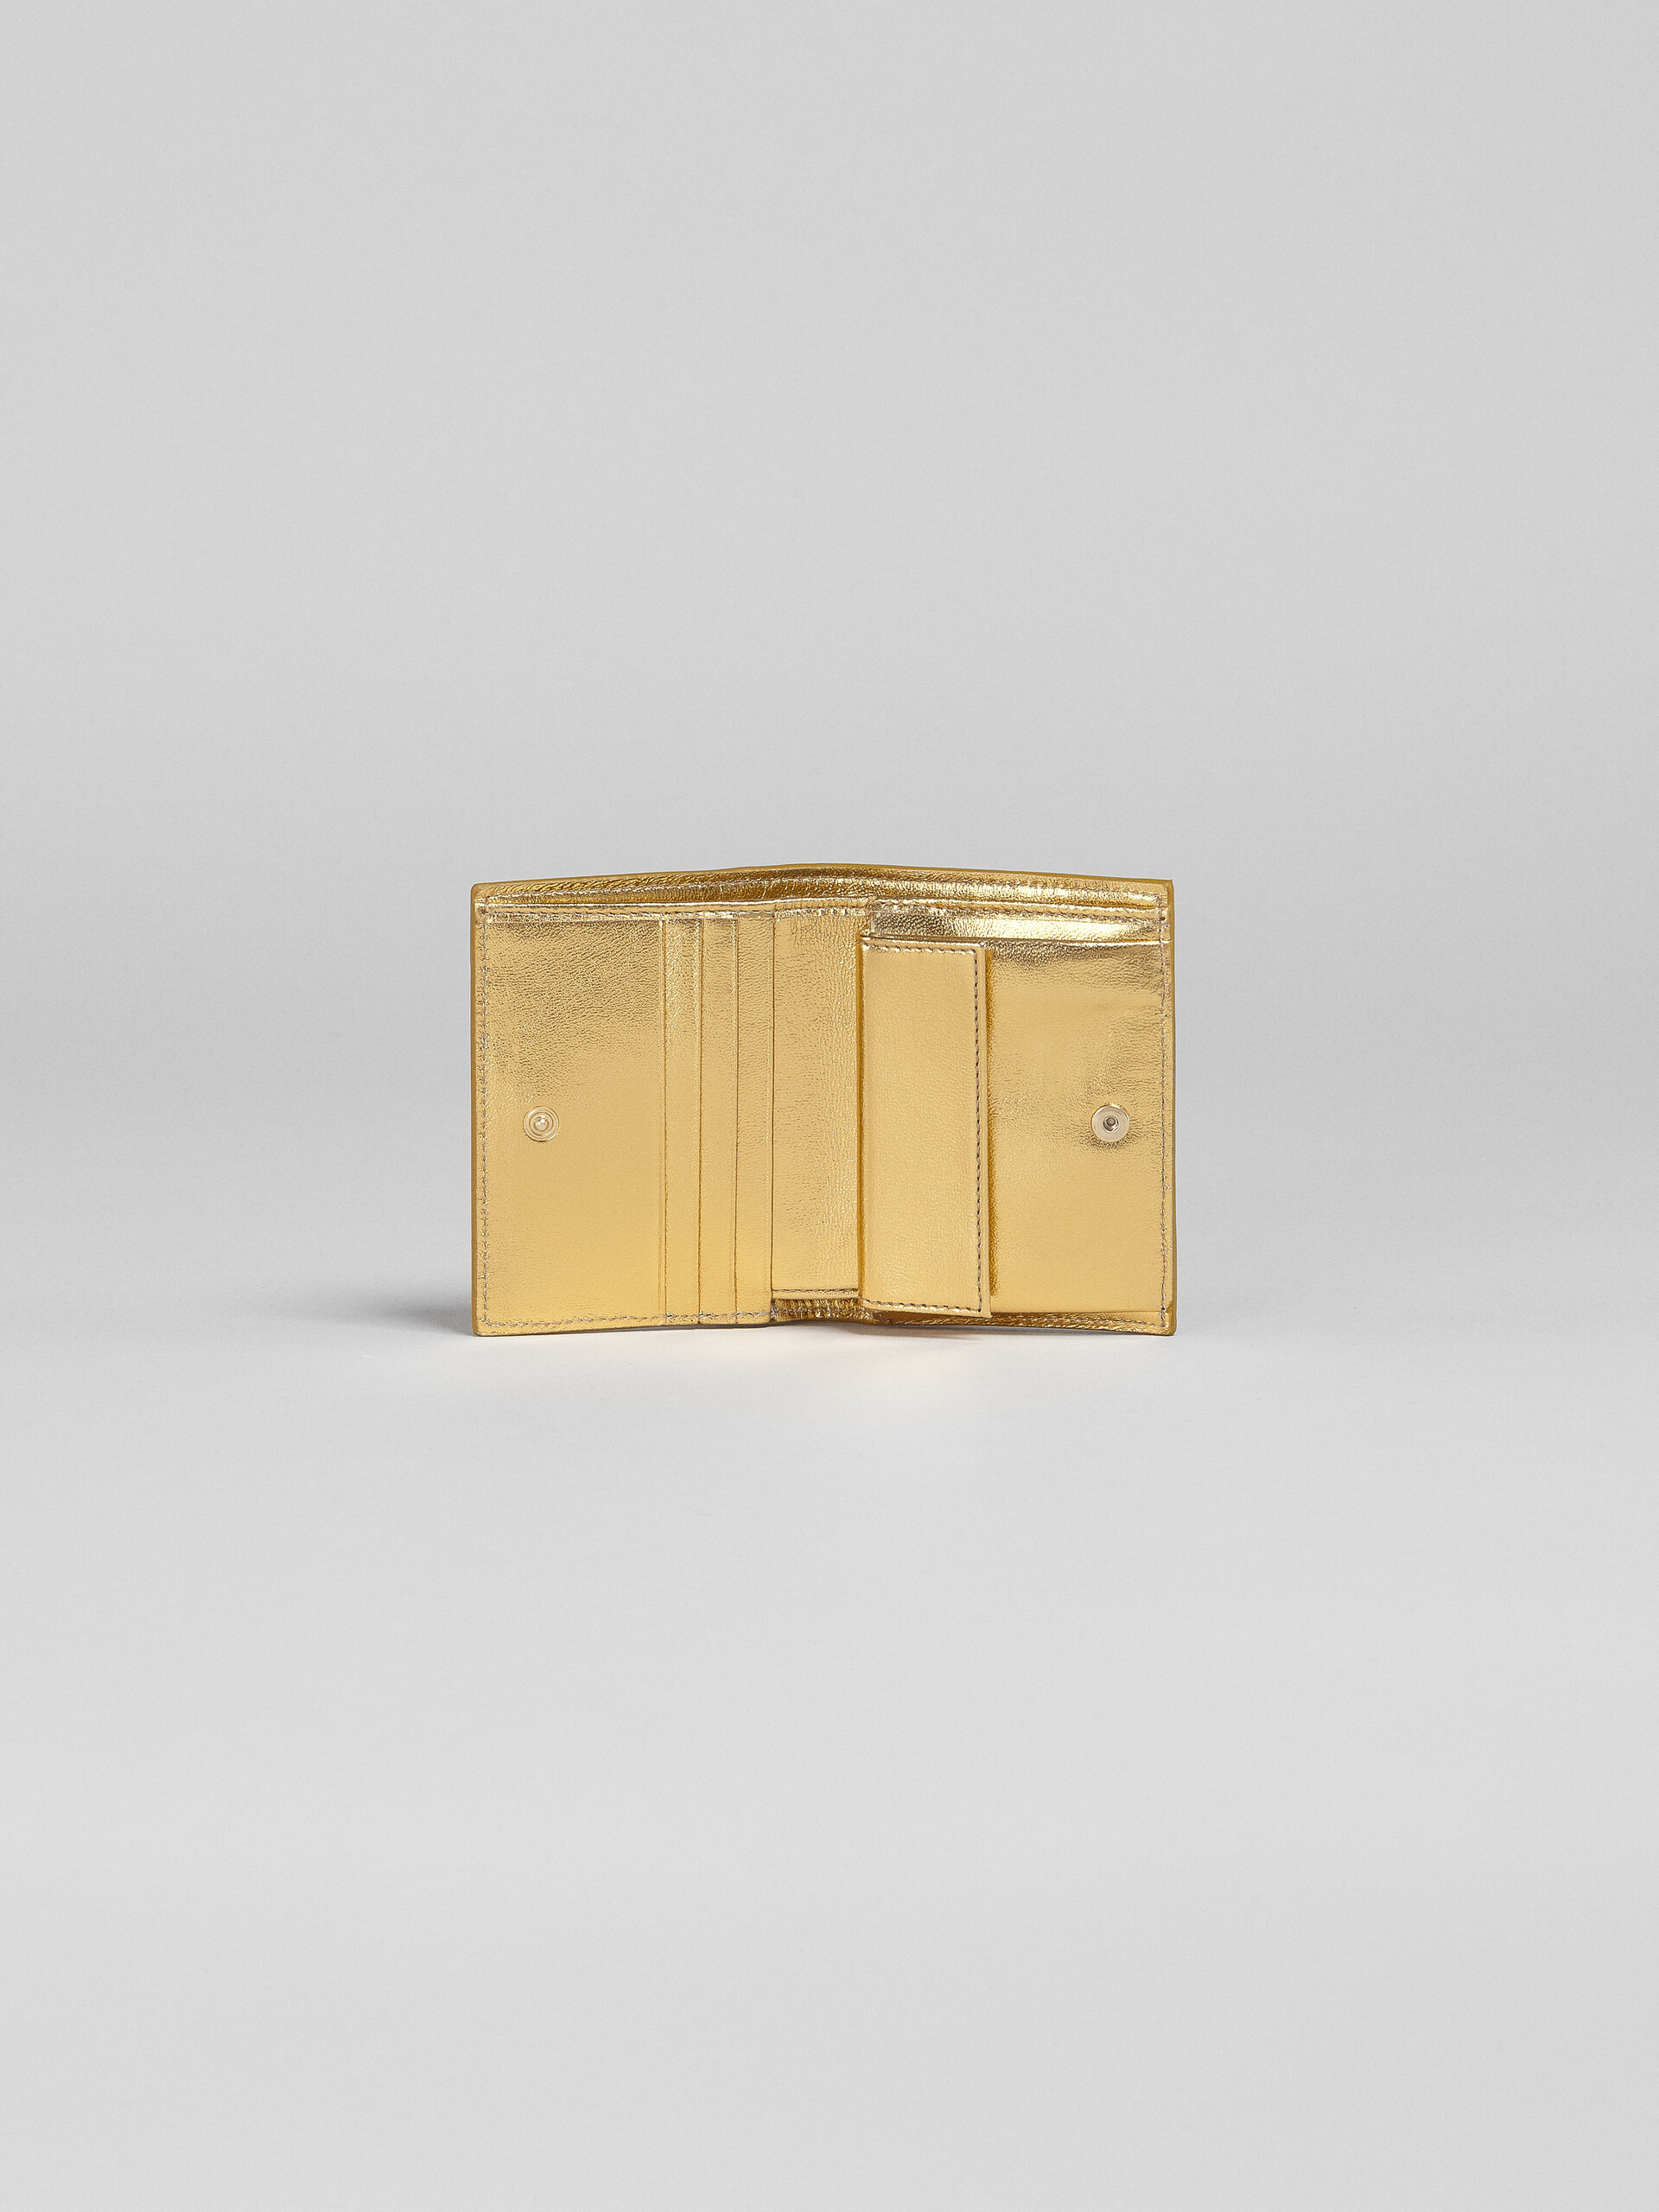 ゴールドメタリック調 ナッパレザー二つ折りウォレット - 財布 - Image 2